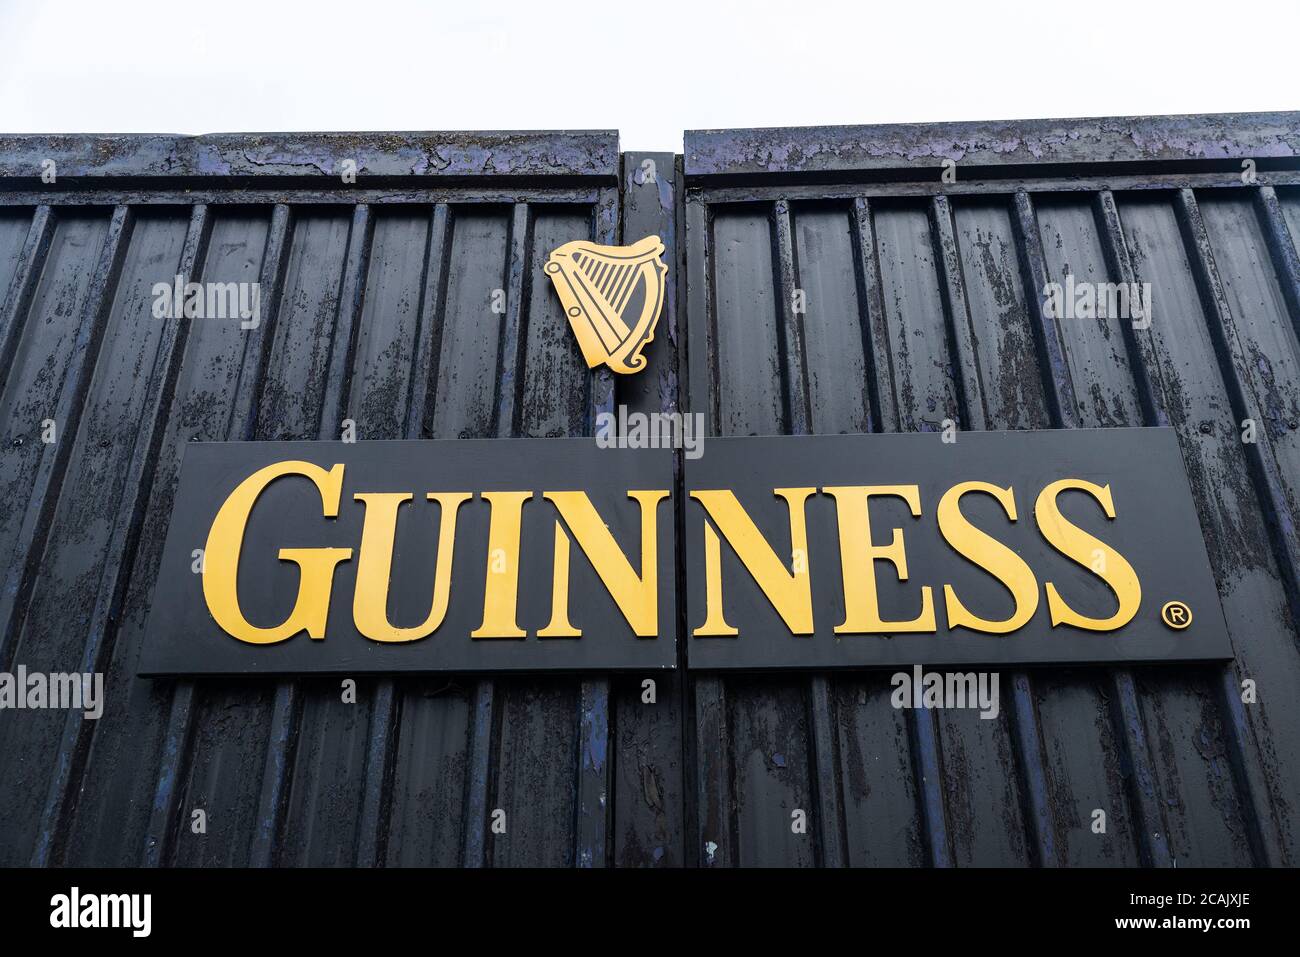 Dublin, Irlande - 31 décembre 2019 : panneau du siège de la brasserie Guinness ( St. James Gate Brewery ) à Dublin, Irlande Banque D'Images